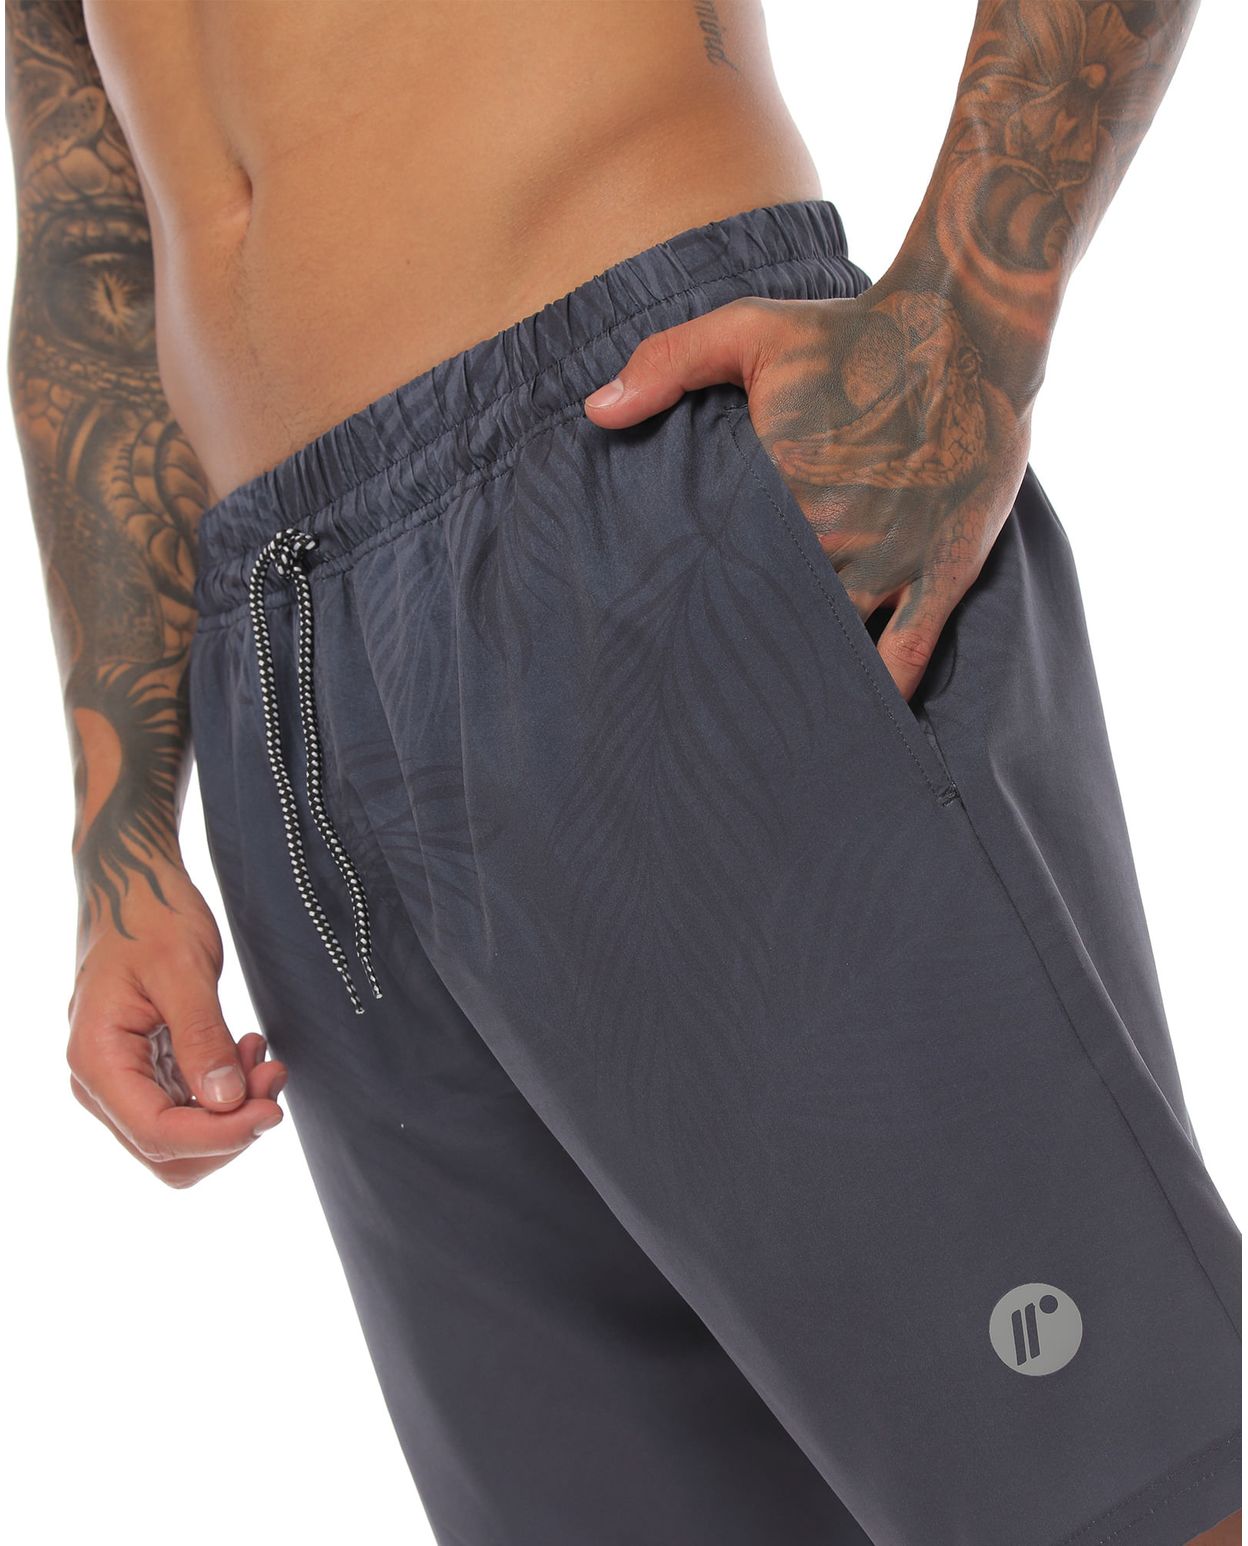 pantaloneta de playa larga color gris oscuro para hombre parte lateral izquierda con bolsillo funcional